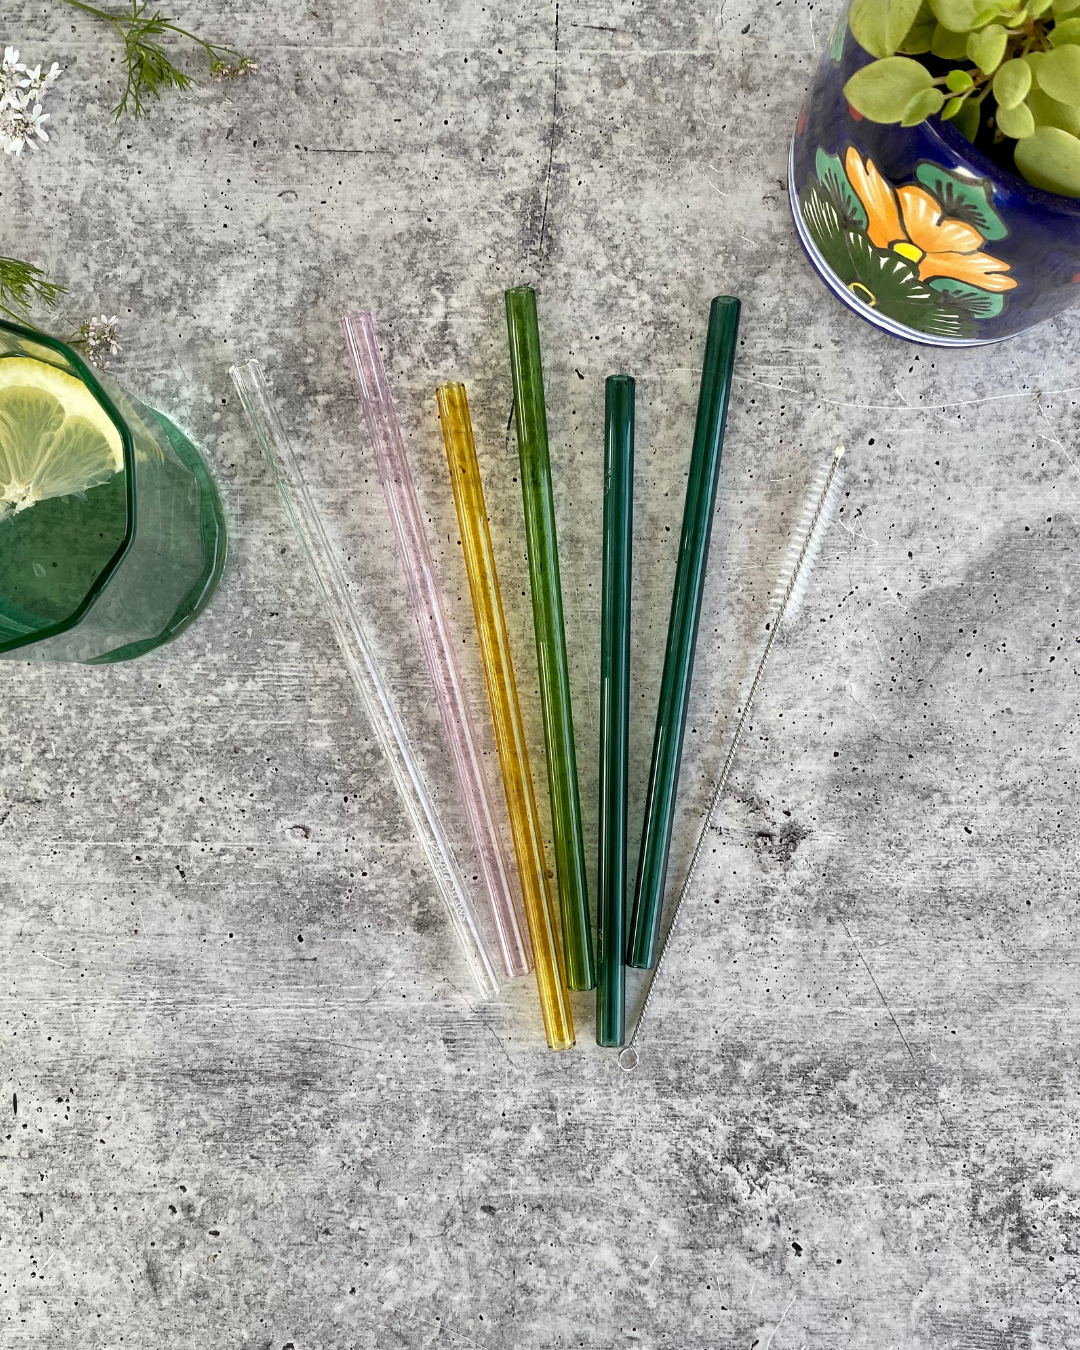 Simply Zero Reusable Glass Smoothie Straw